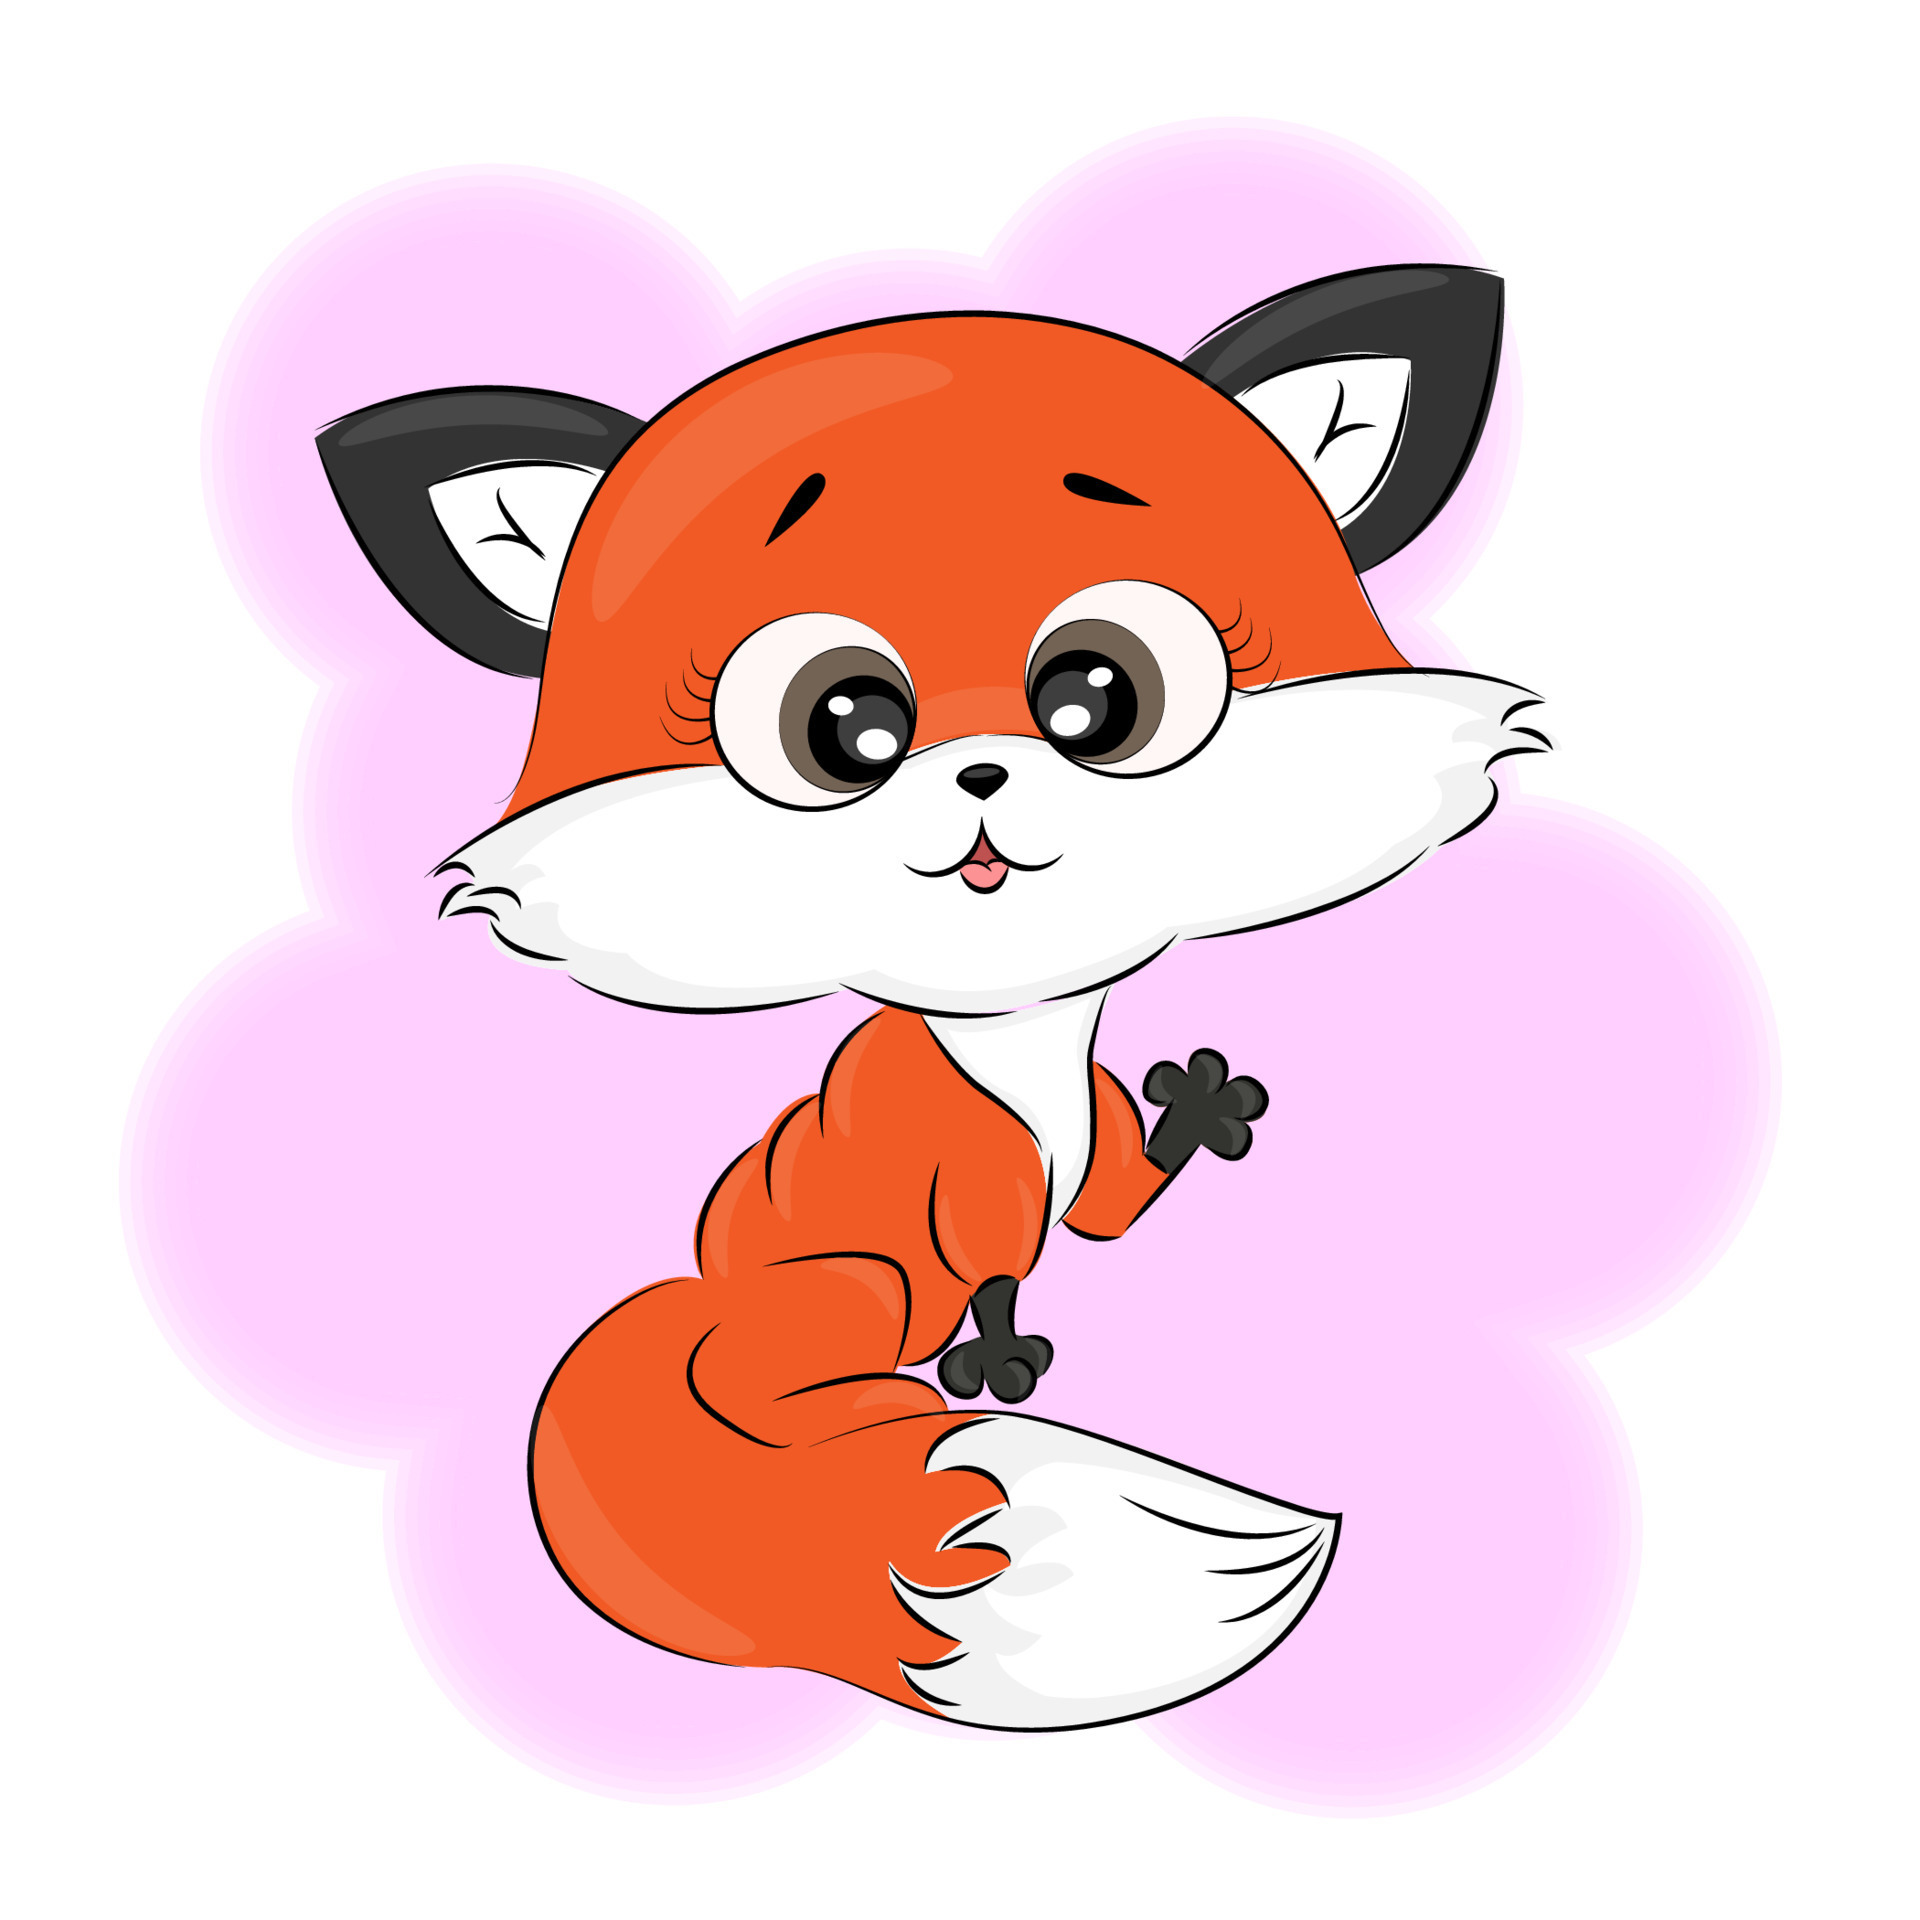 raposa bonito dos desenhos animados. raposa vermelha engraçada